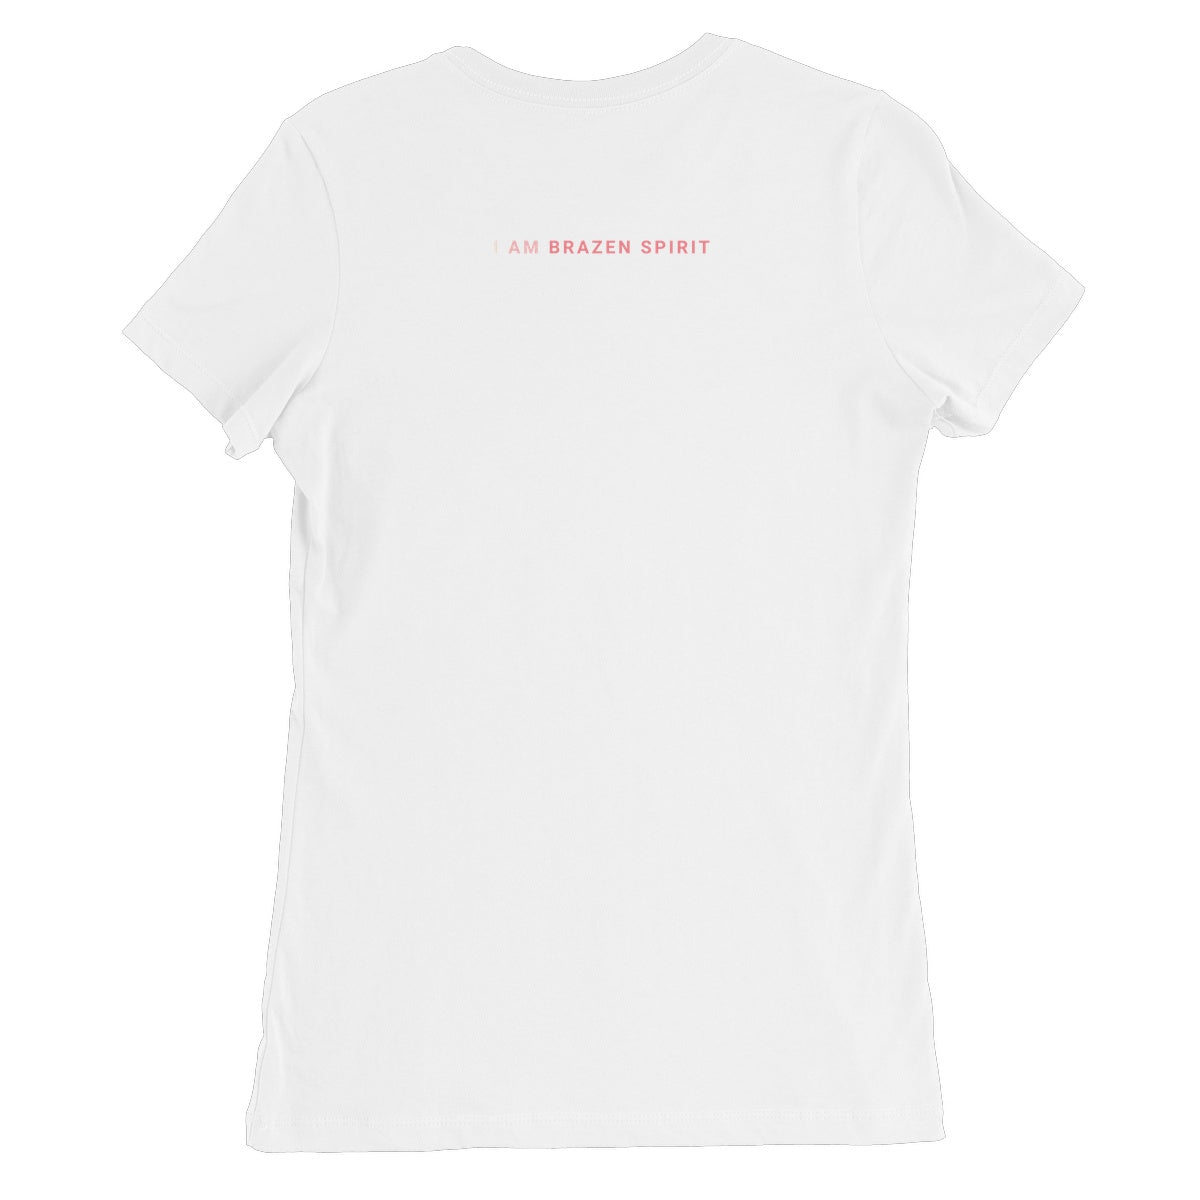 Grateful Heart, Positive Mind - White - Women's T-Shirt